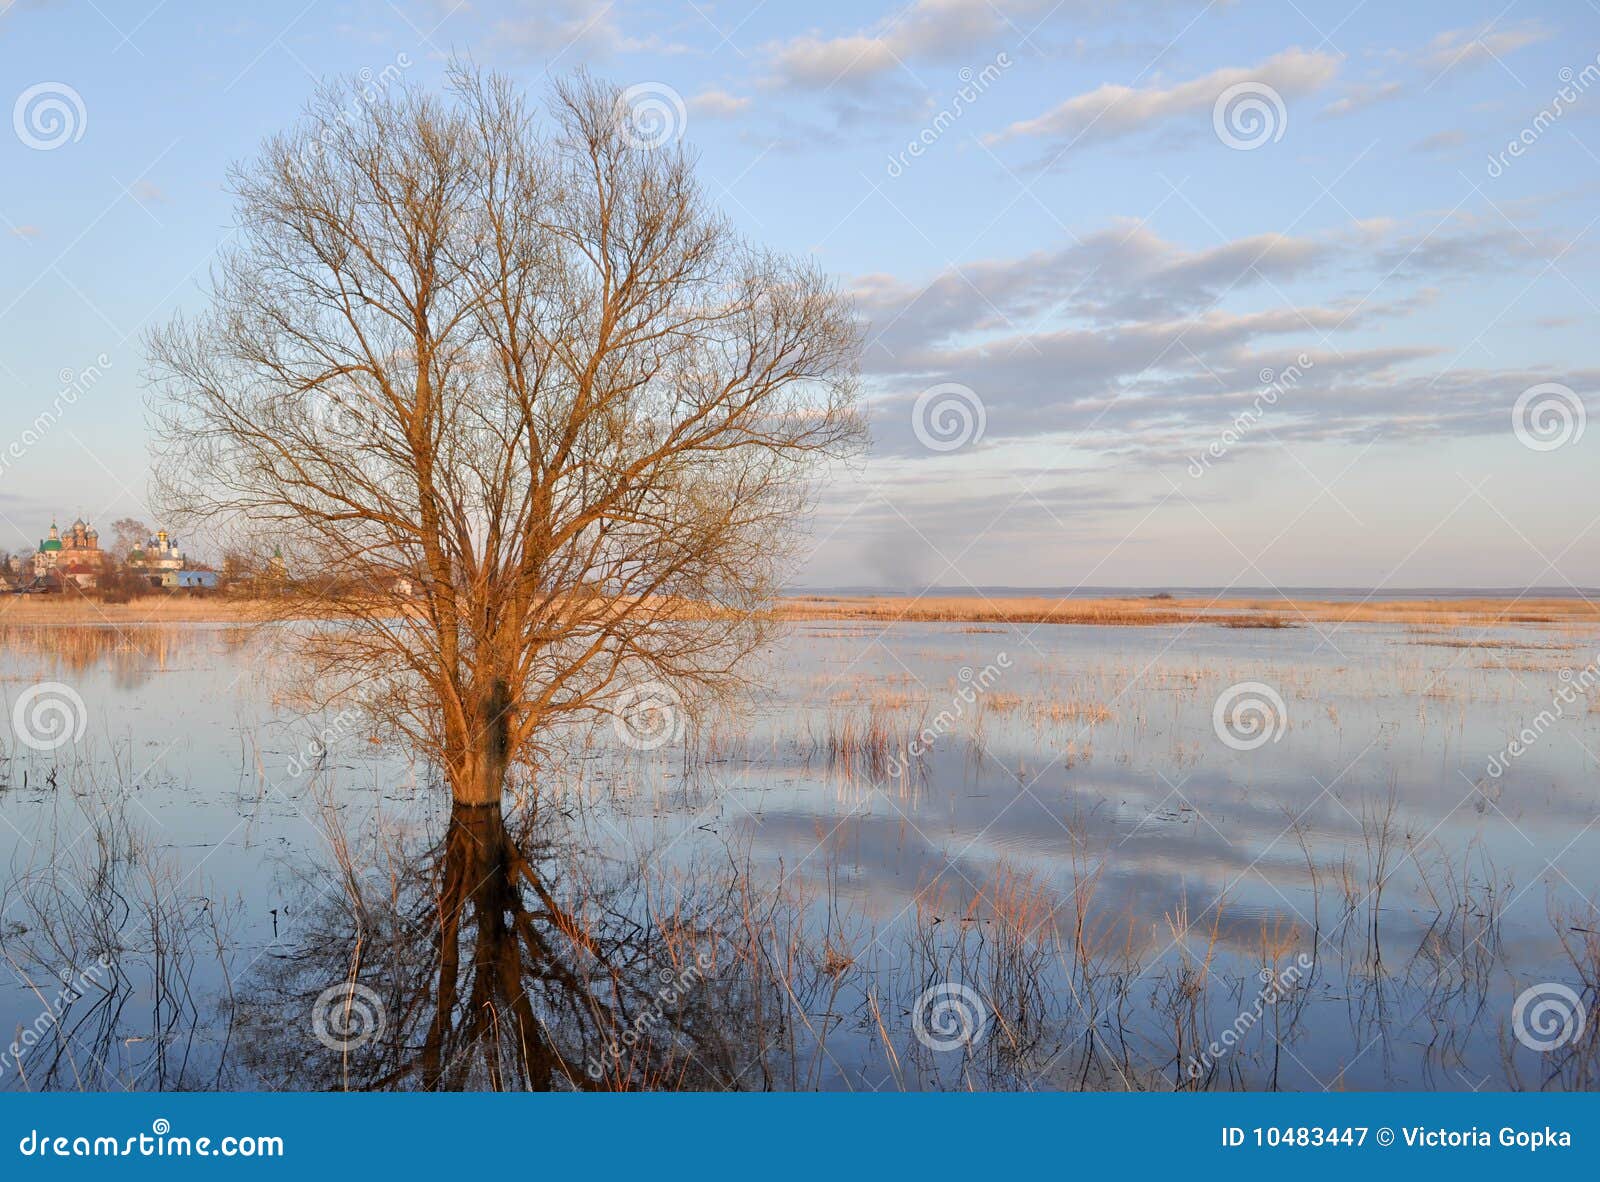 tree in the river near rostov